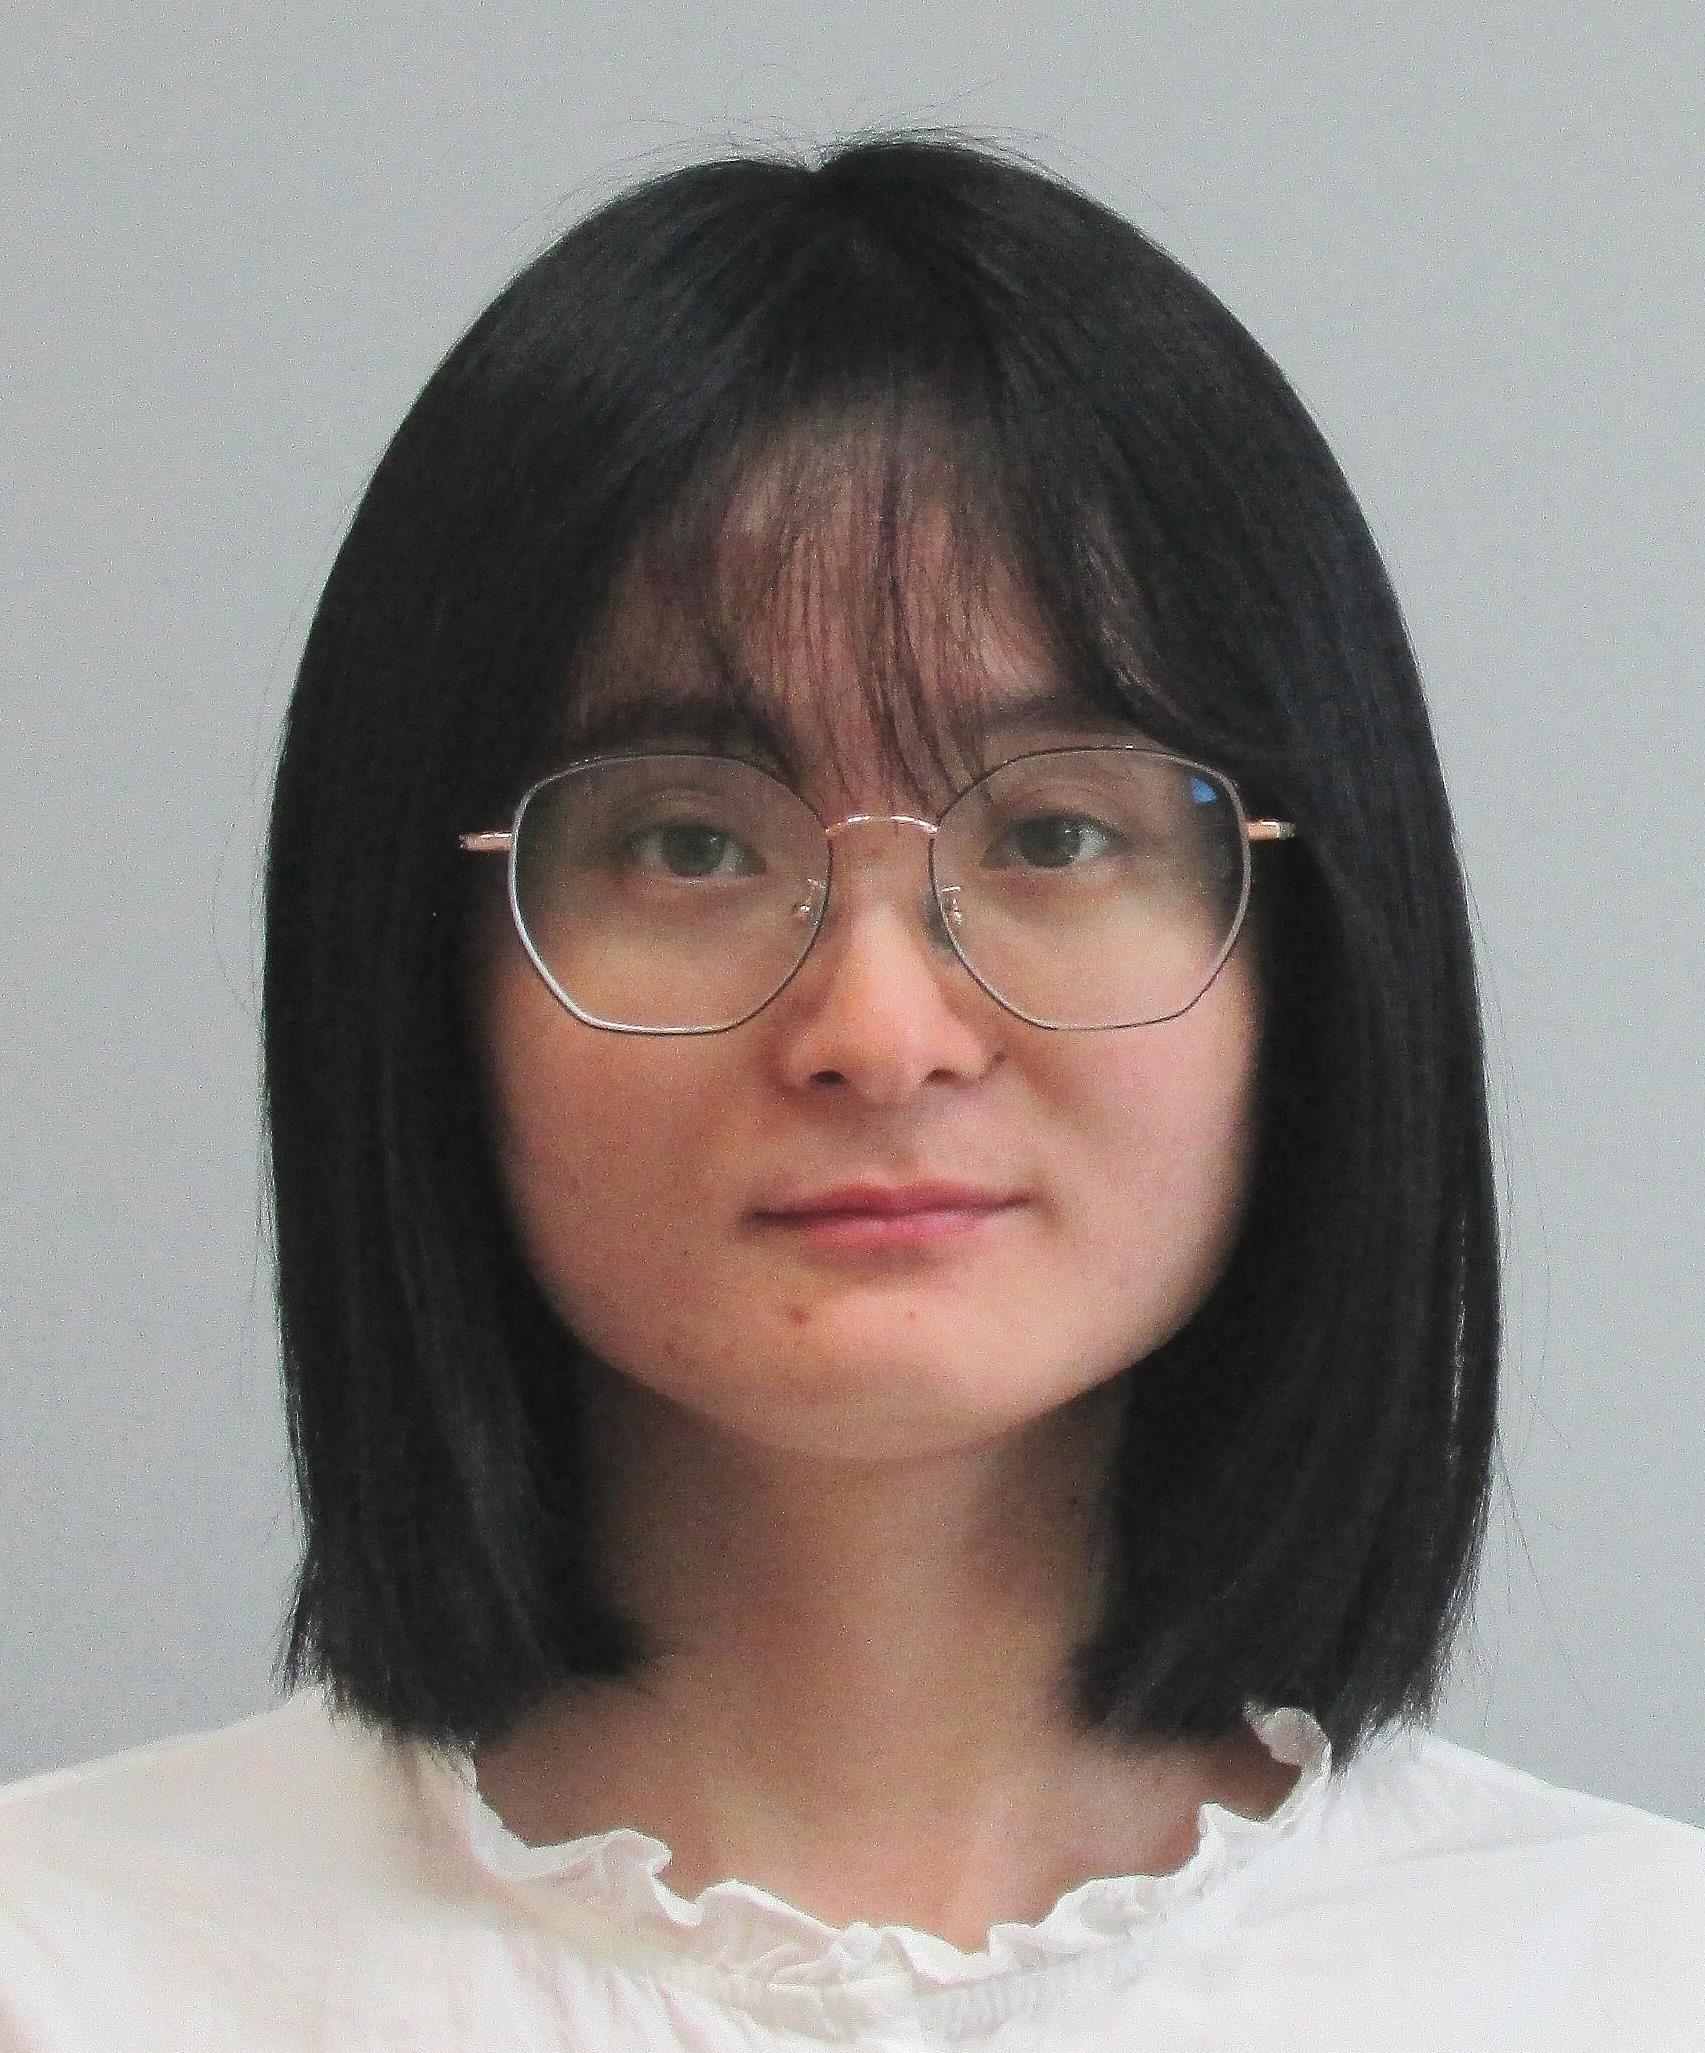 Dr. Yihui Dong